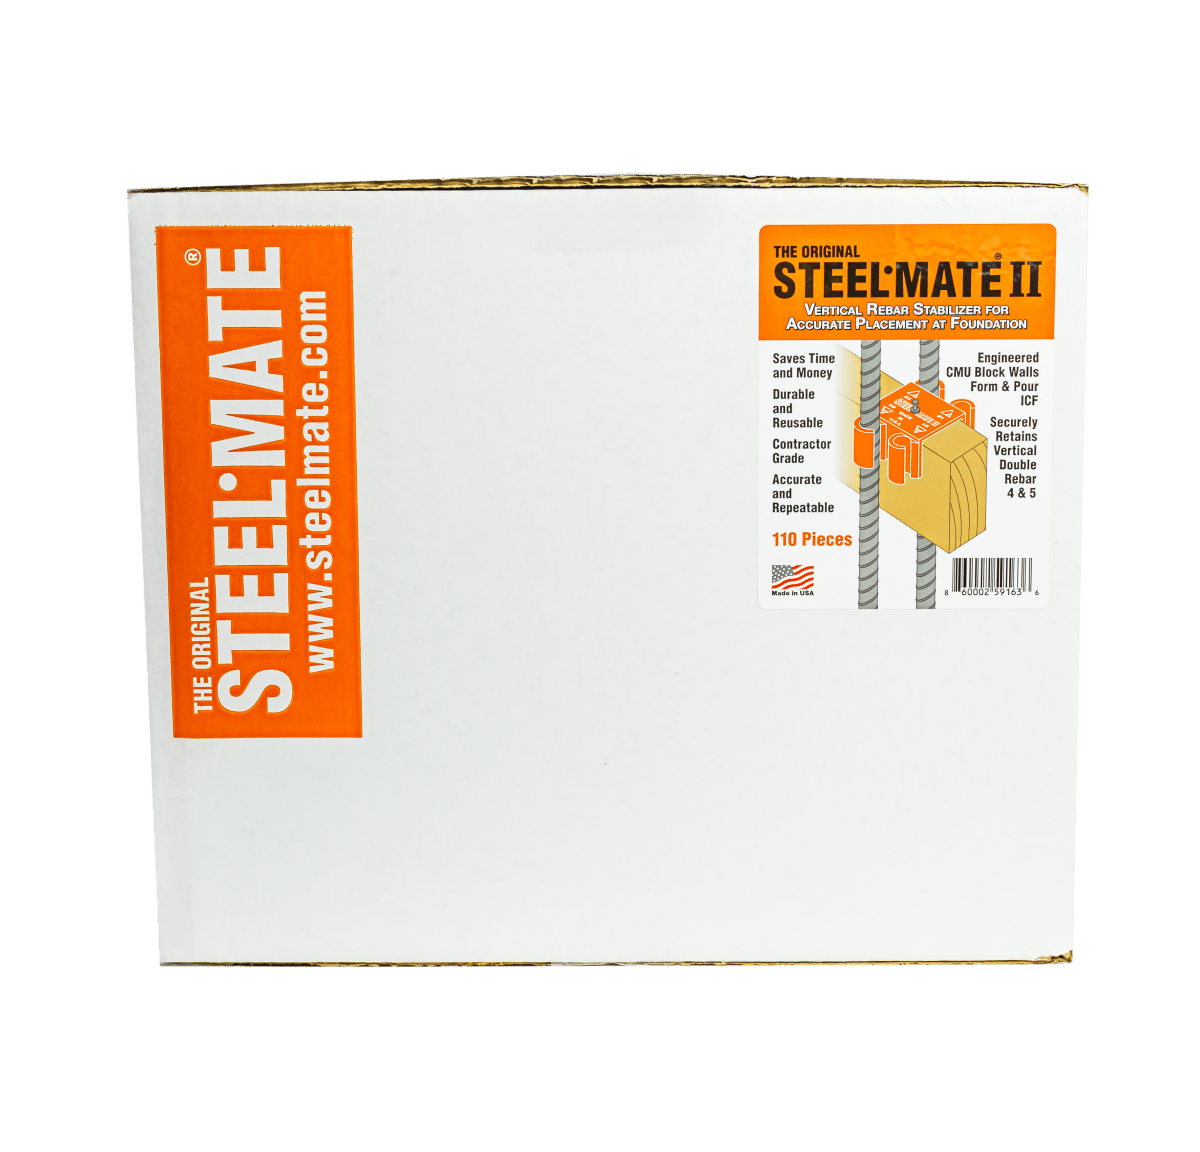 Steelmate II - Steel Mate